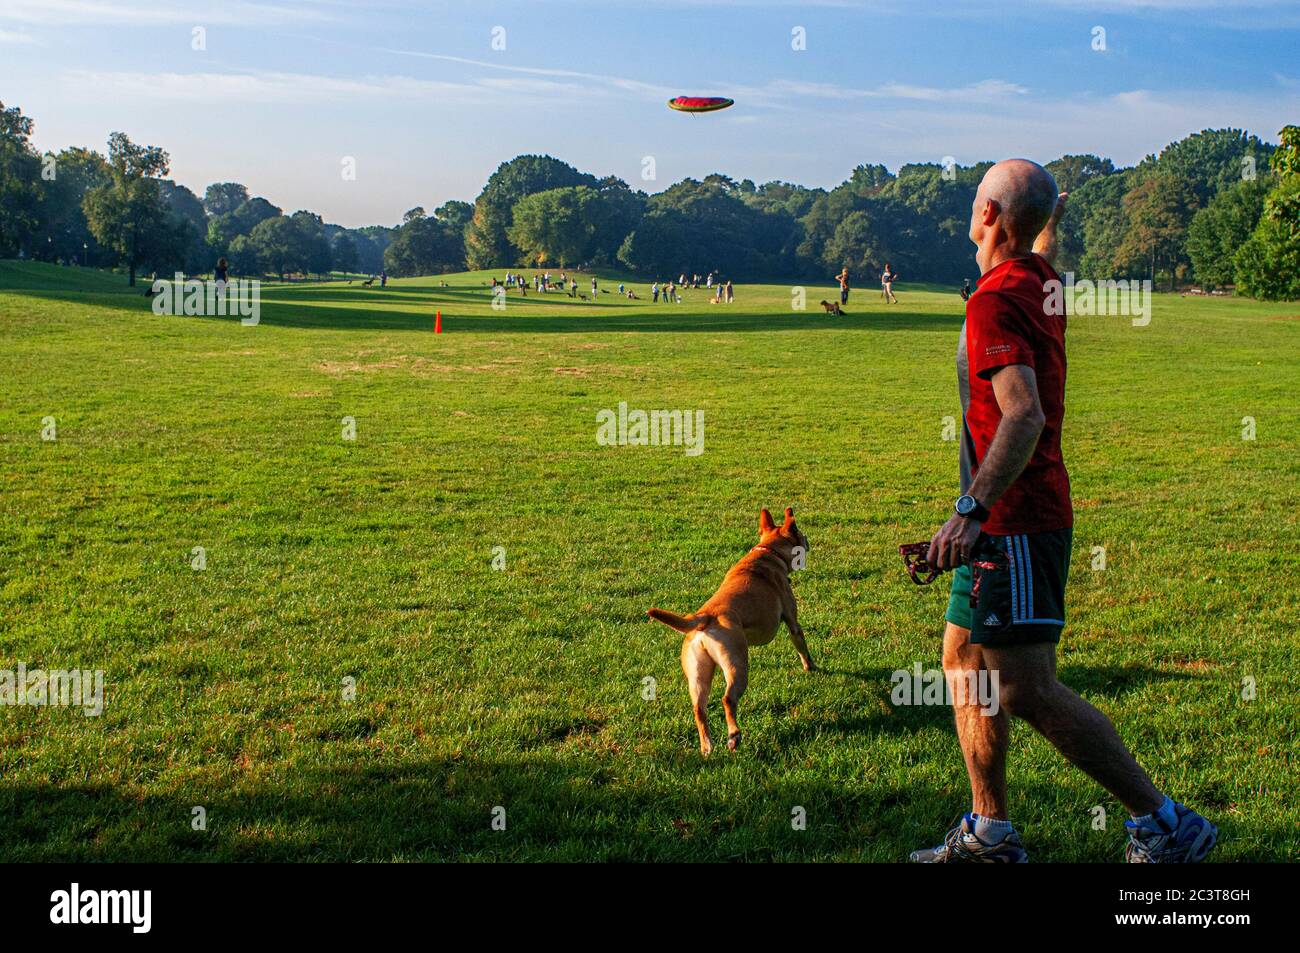 Mann, der mit einem Hund auf der Wiese des Prospect Park in Brooklyn, New York, USA spielt. Prospect Park ist ein 237 Hektar großer Park in Brooklyn. Es hat Stockfoto